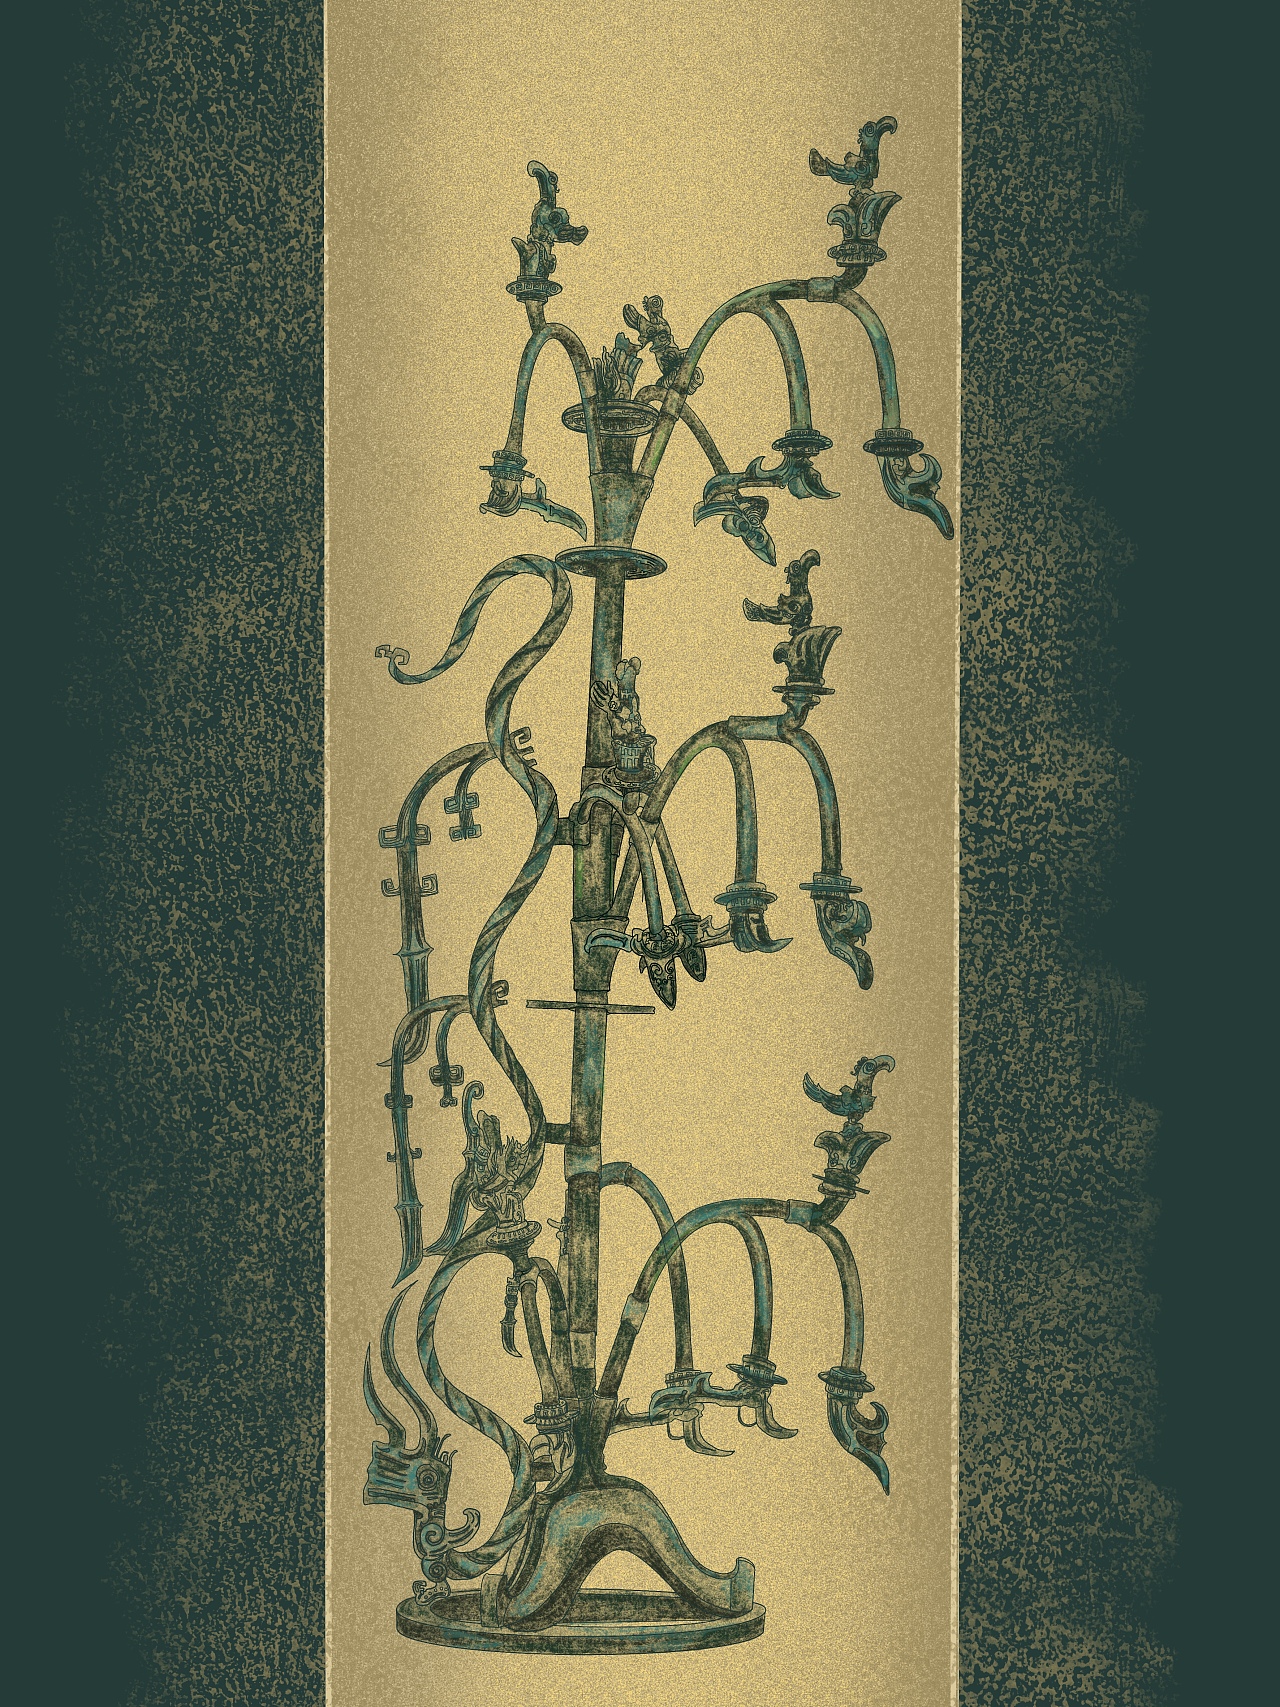 扶桑树风格插画设计作品-设计人才灵活用工-设计DNA